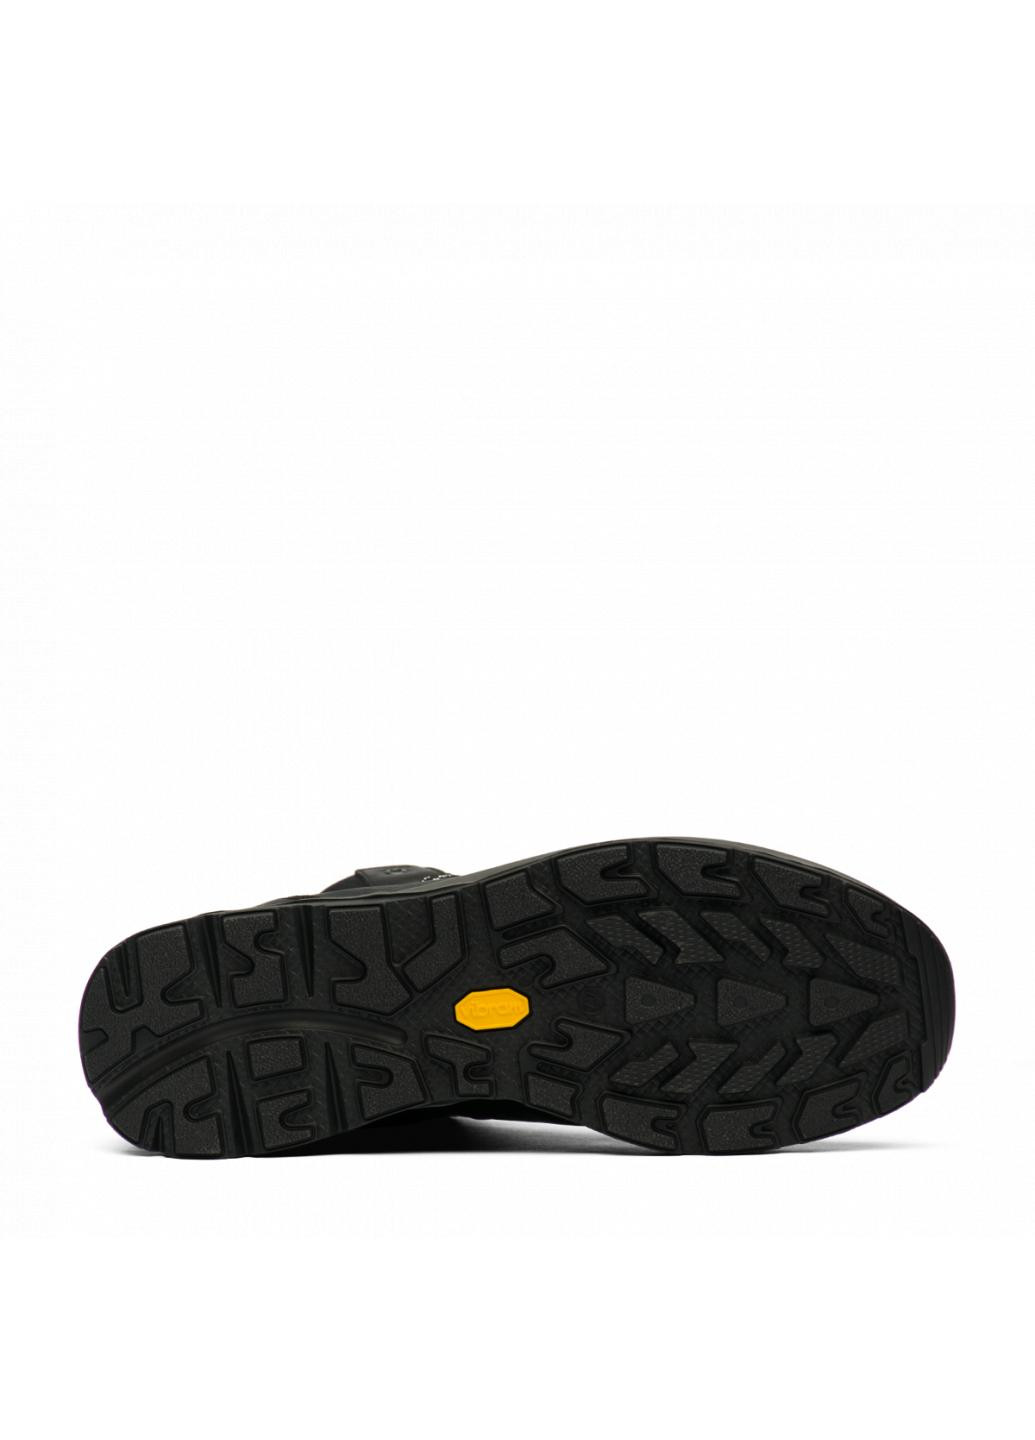 Черные зимние ботинки 14833-a42 Grisport